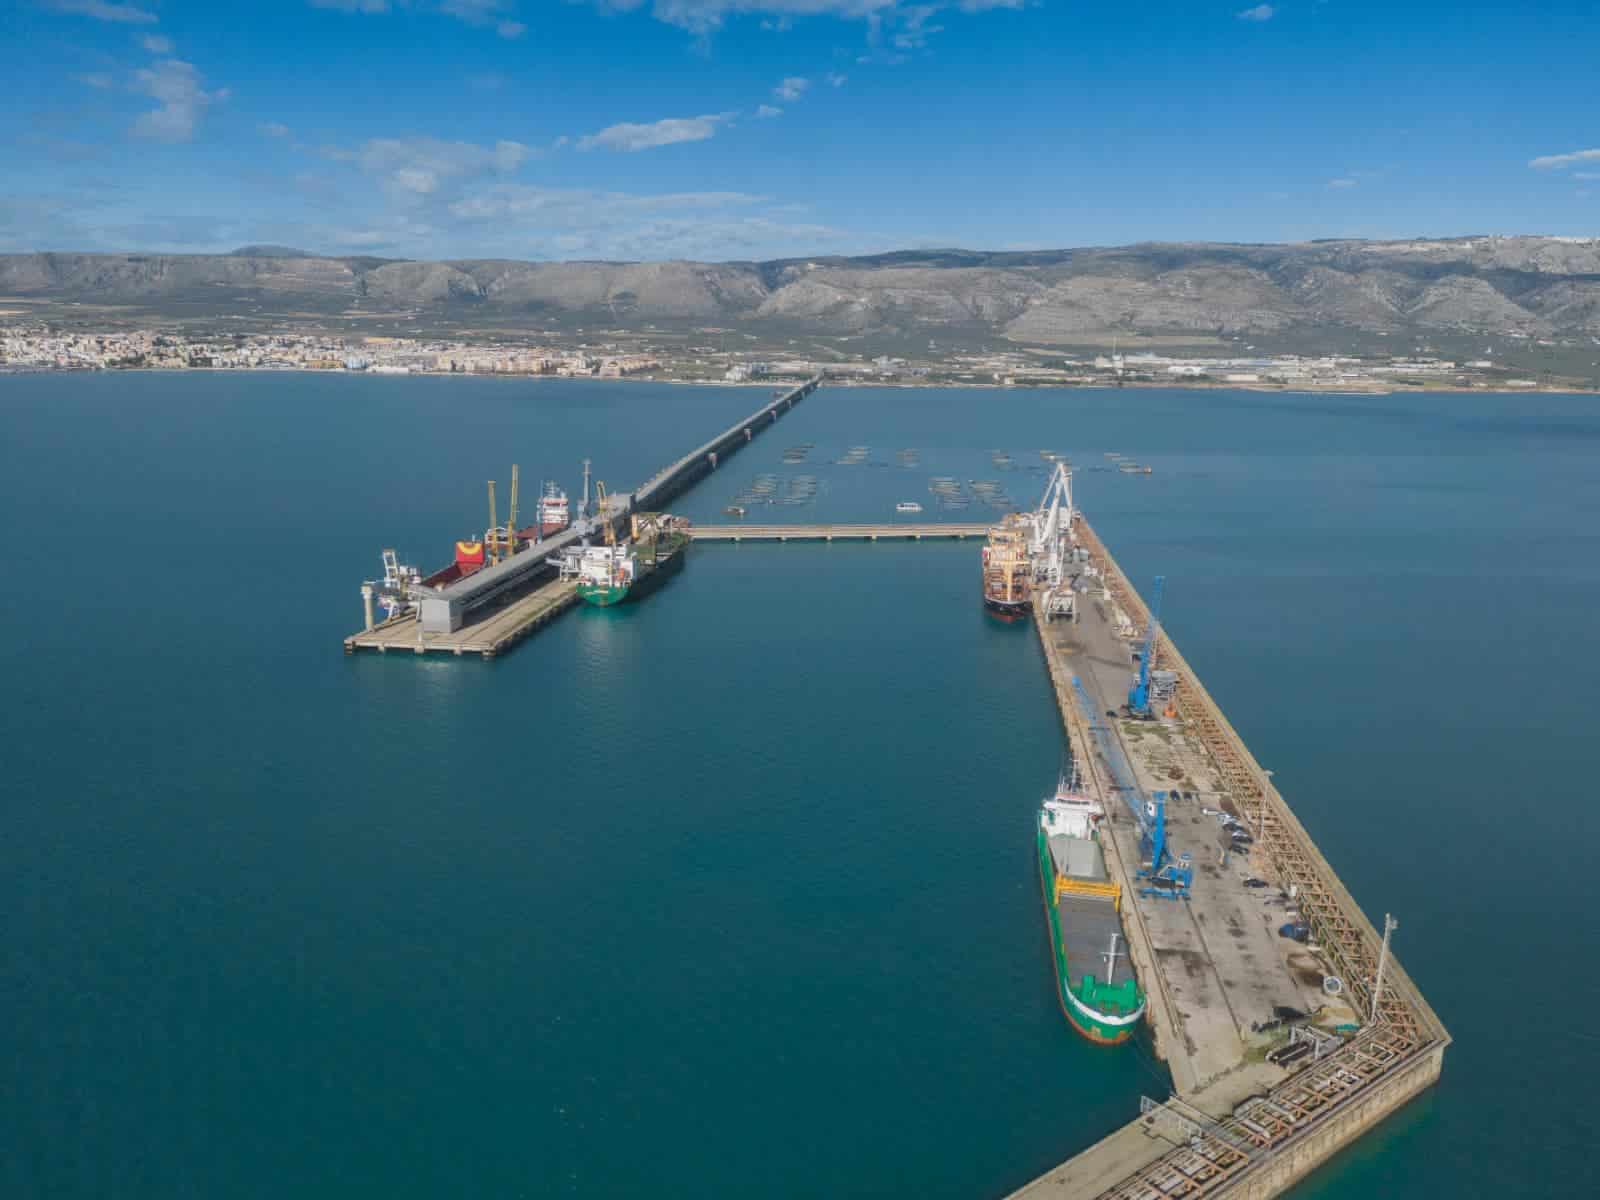 Porto industriale di Manfredonia, 5 navi impegnate in operazioni commerciali